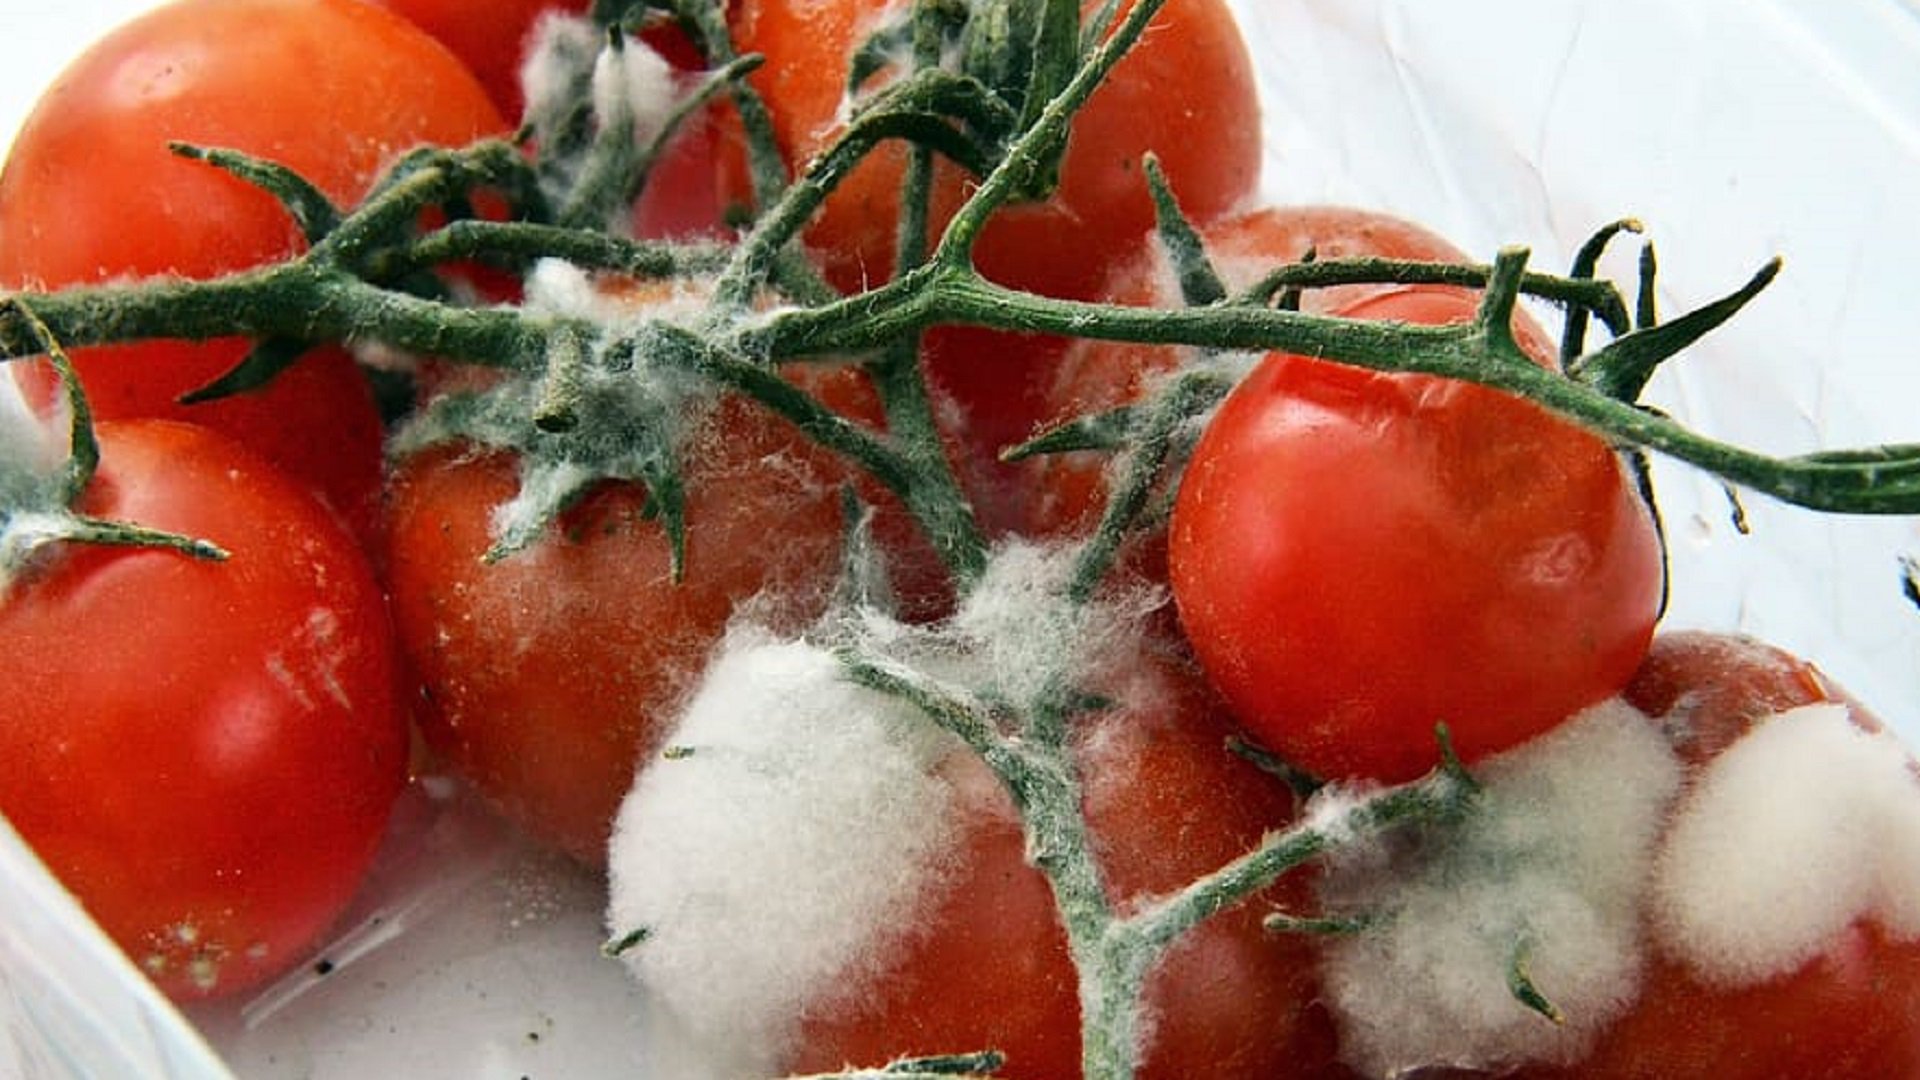 food-tomatoes-healthy-vegetables.jpg1920x1080.jpg